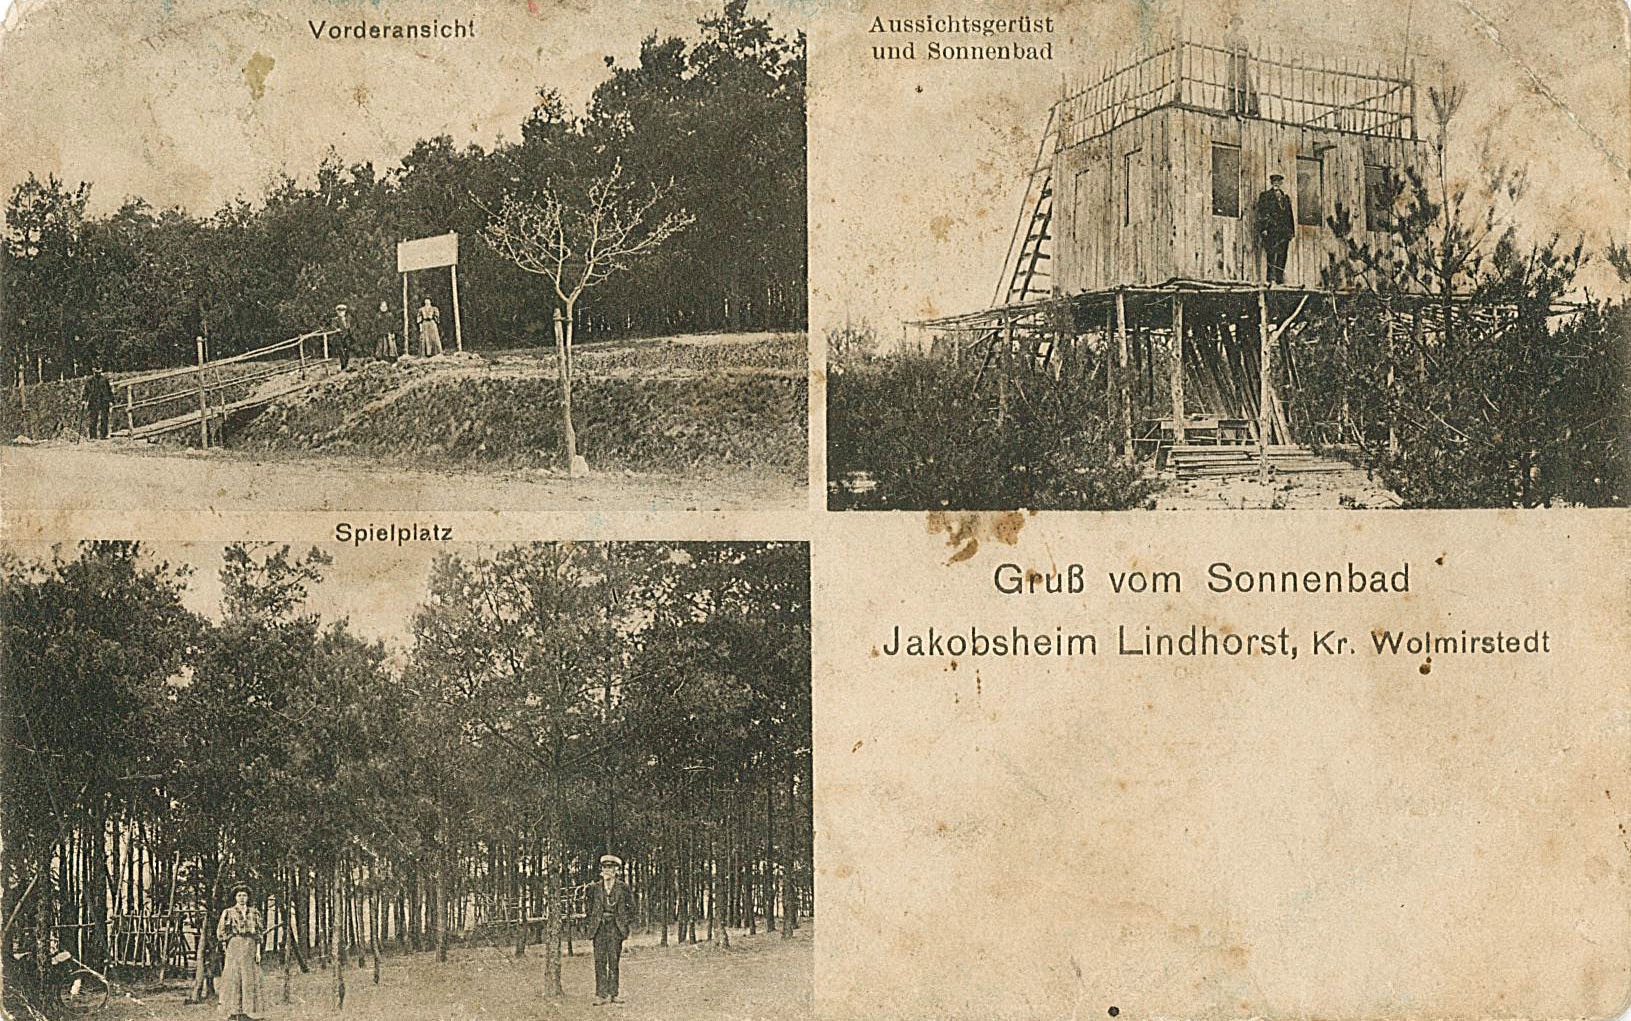 Postkarte an Otto Gruß von seinem Bruder, 6. August 1901 (Museum Wolmirstedt RR-F)